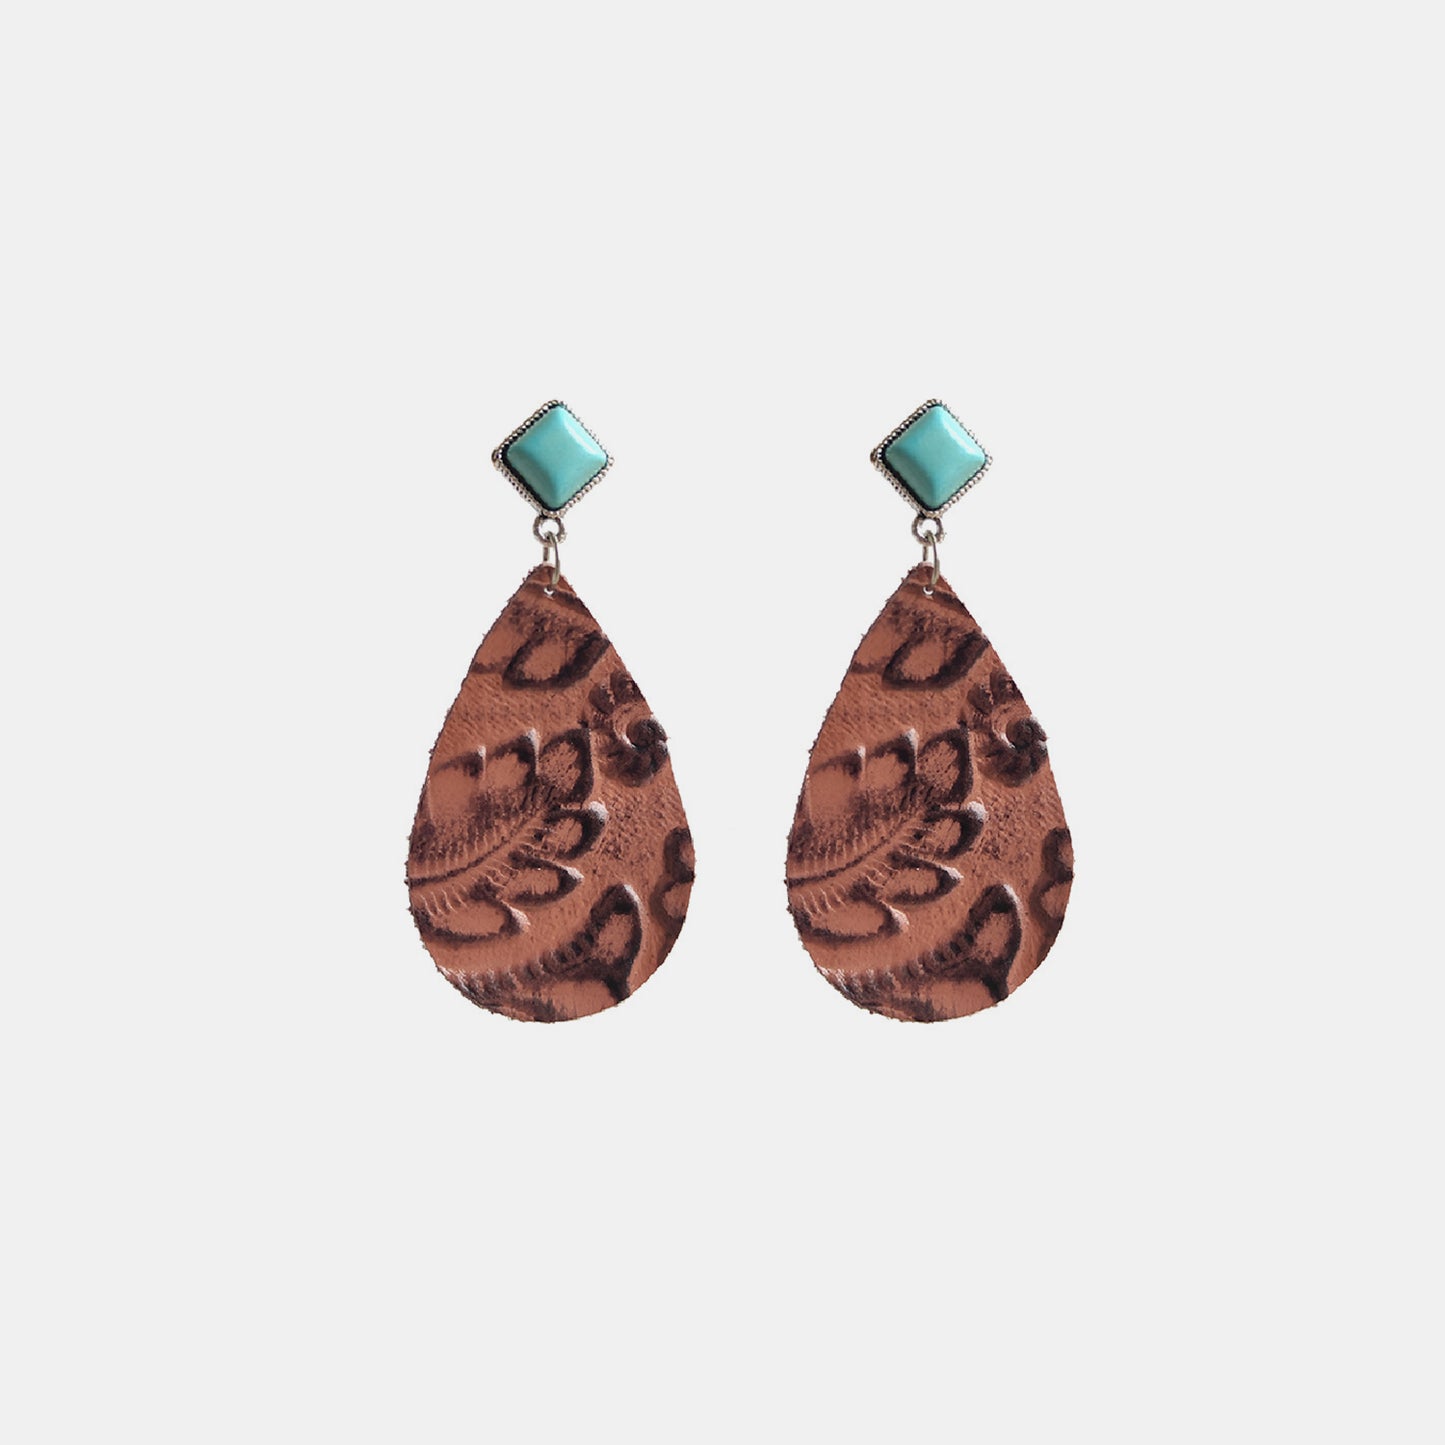 Artificial Turquoise Teardrop Earrings Caramel One Size